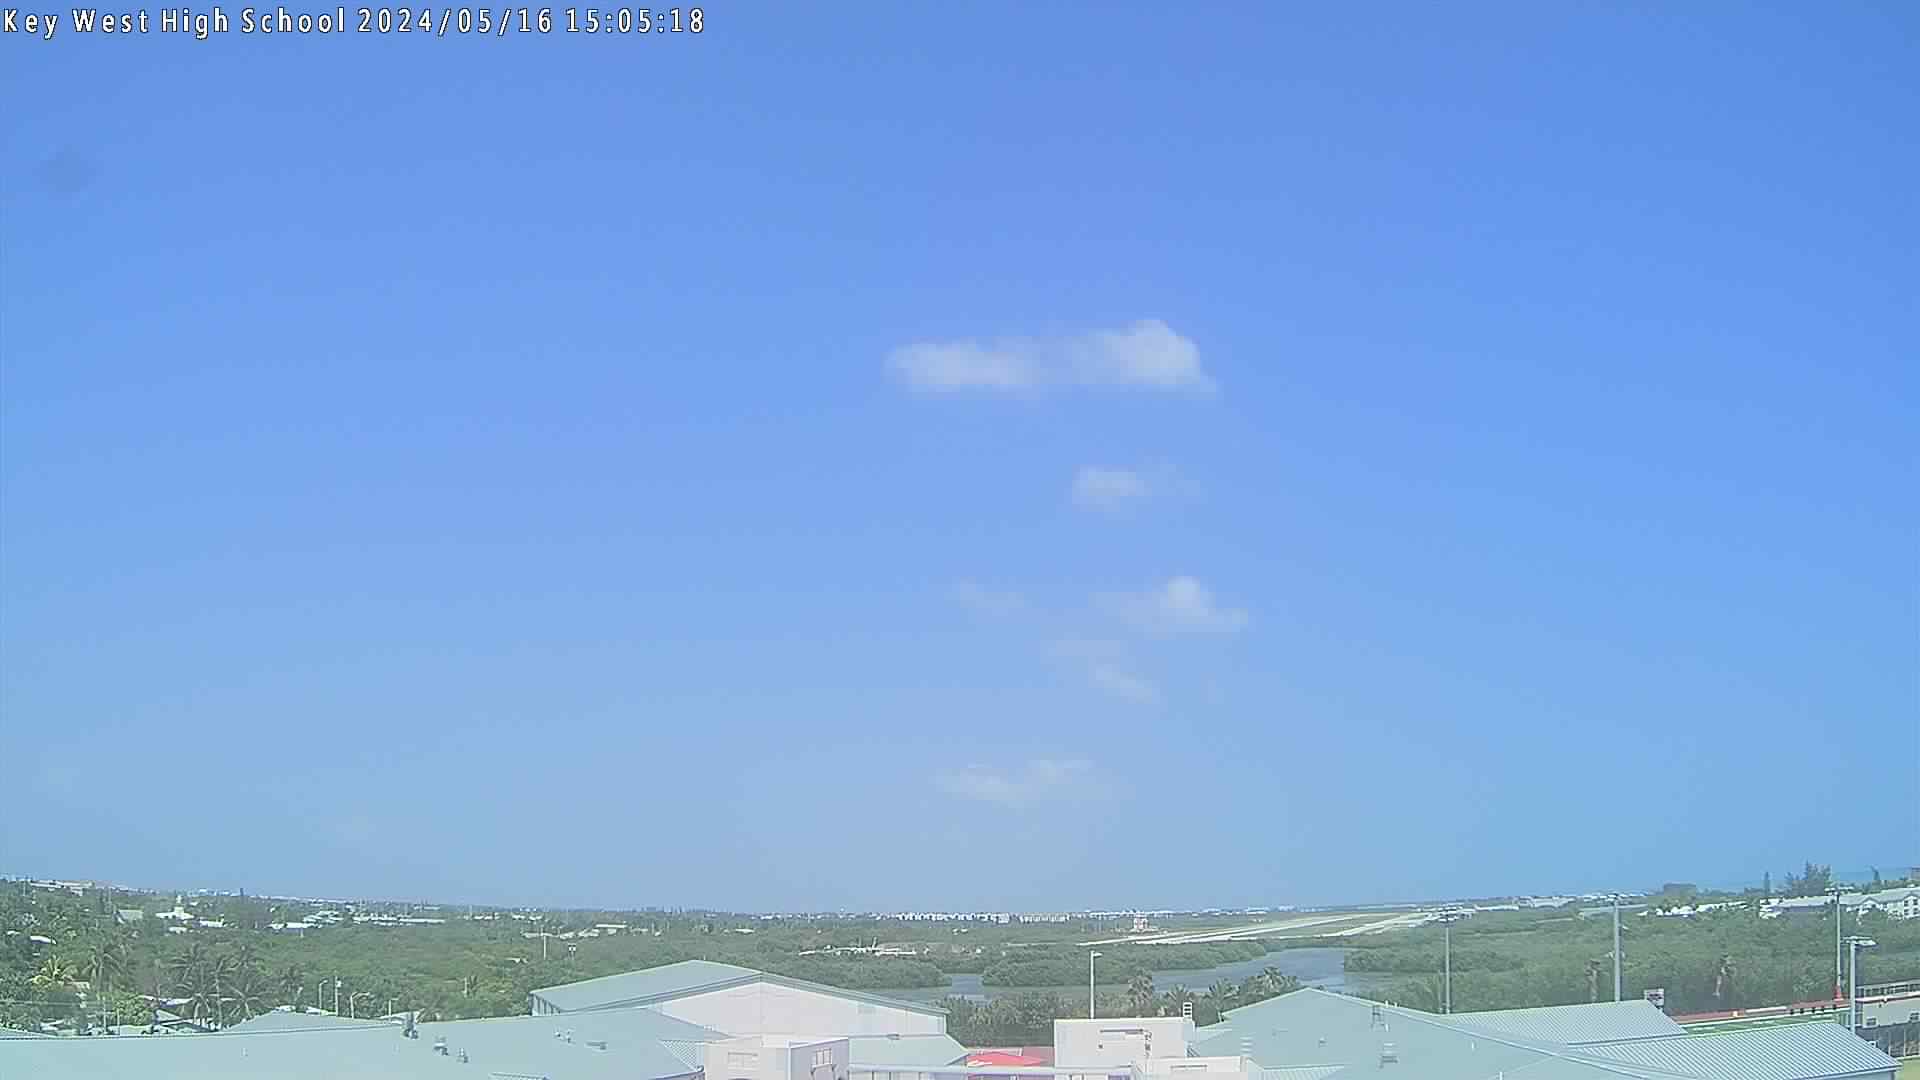 Key West sky camera